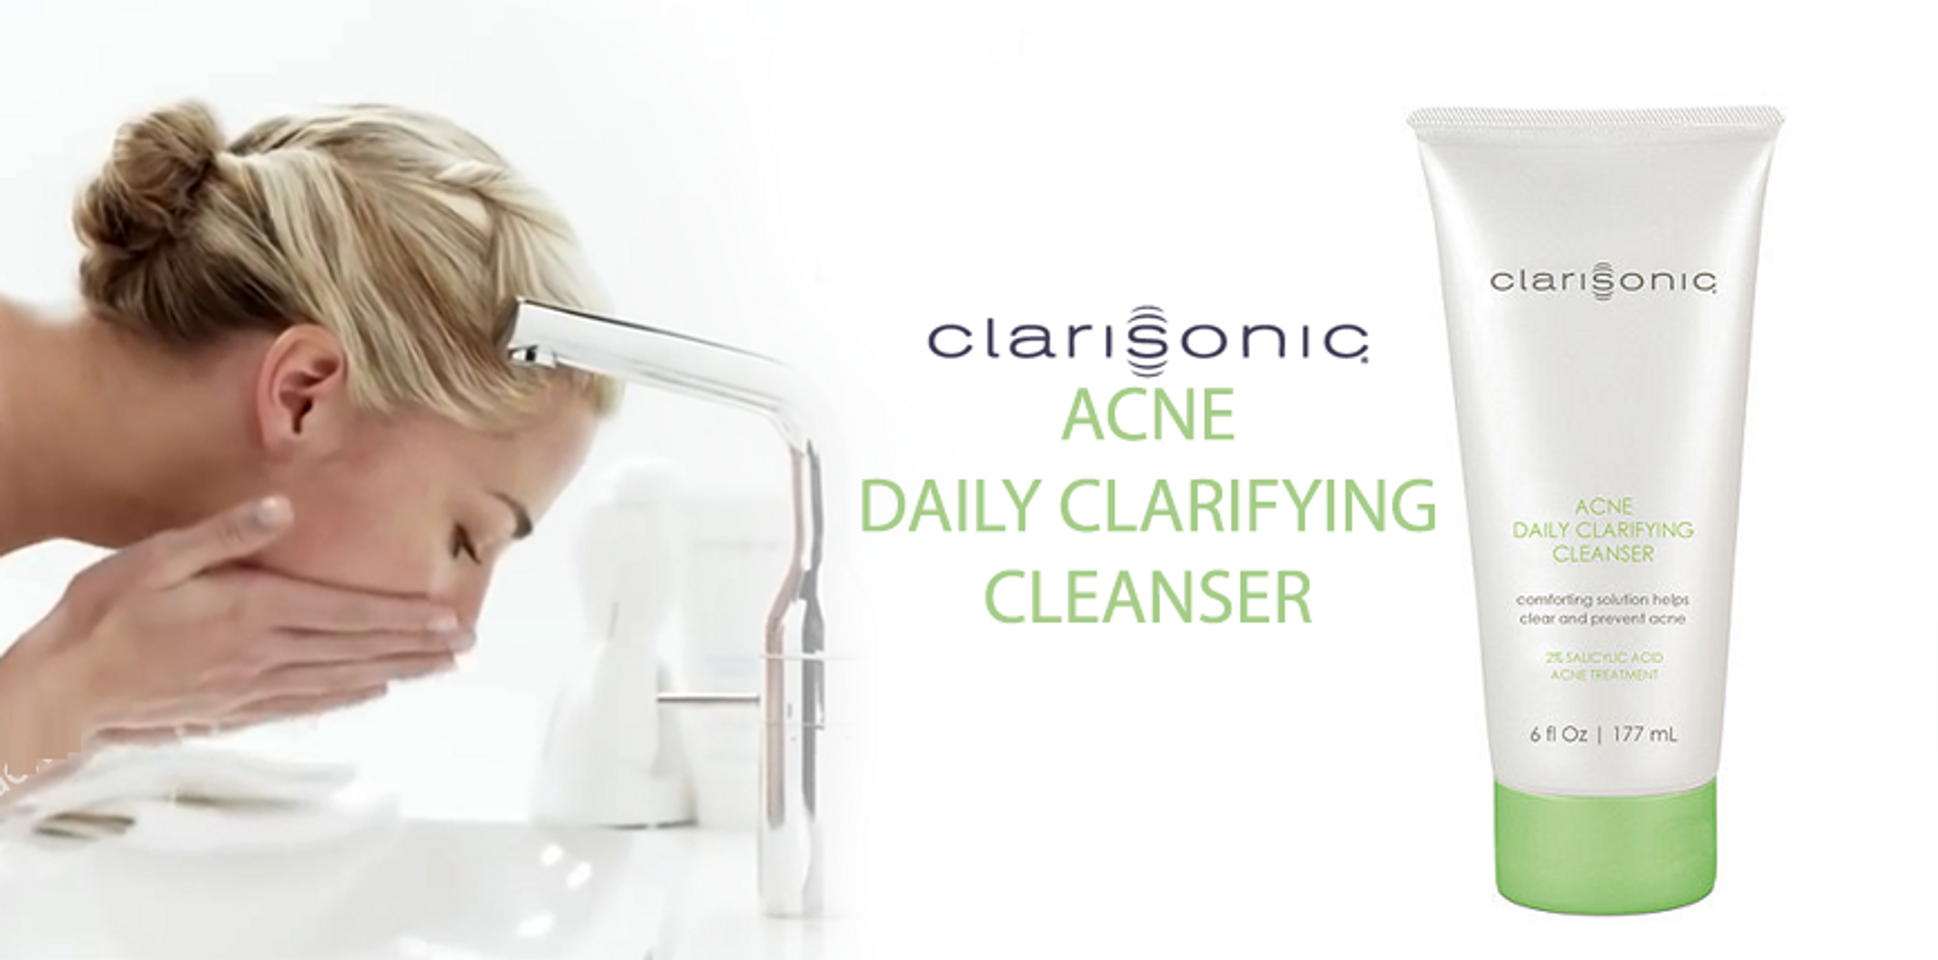 Sữa rửa mặt giúp giảm mụn Clarisonic Acne Clarifying Cleanser giúp làm sạch bề mặt da, cân bằng độ ẩm, làm dịu kích ứng và hỗ trợ ngừa mụn hiệu quả